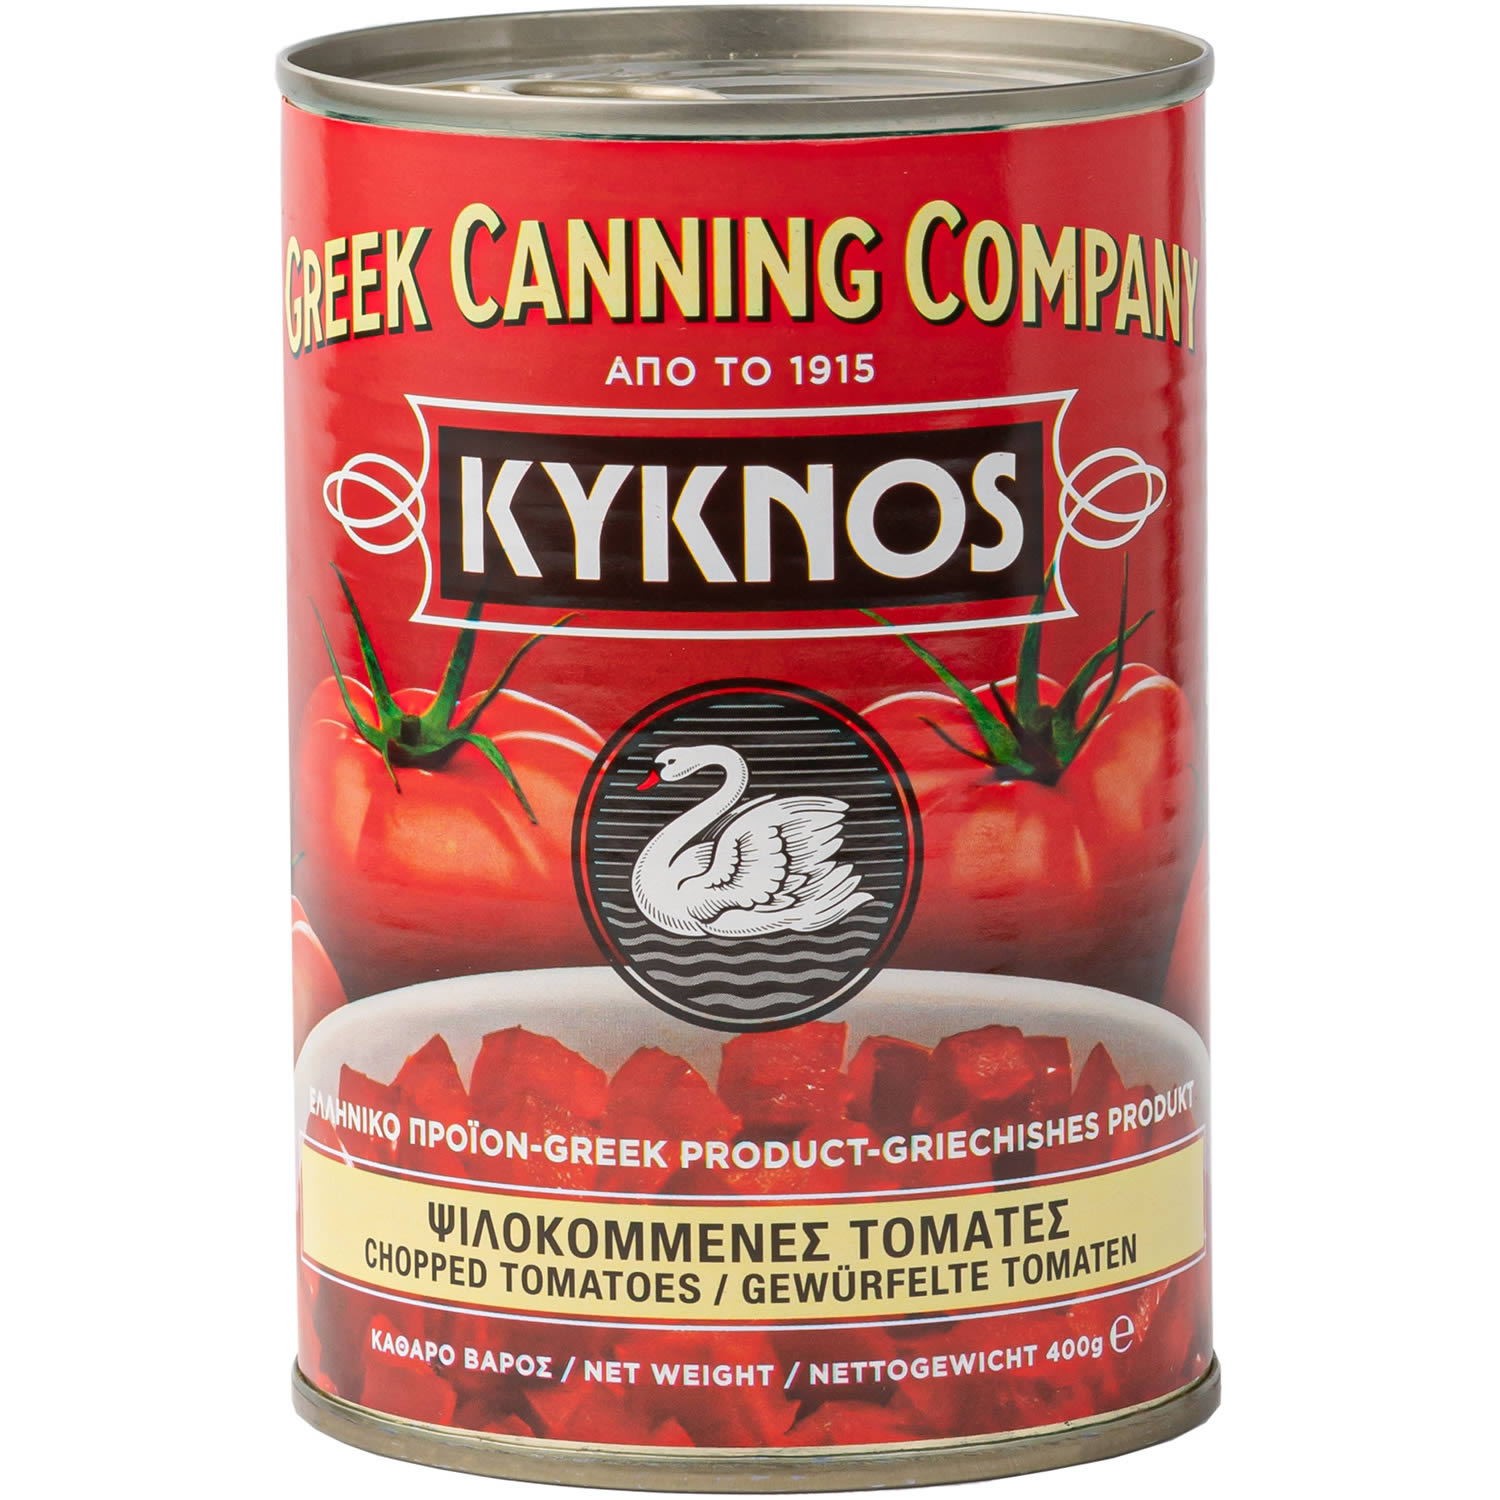 Kyknos - Gehackte / Gewürfelte Tomaten in Tomatensaft eingelegt 400 g